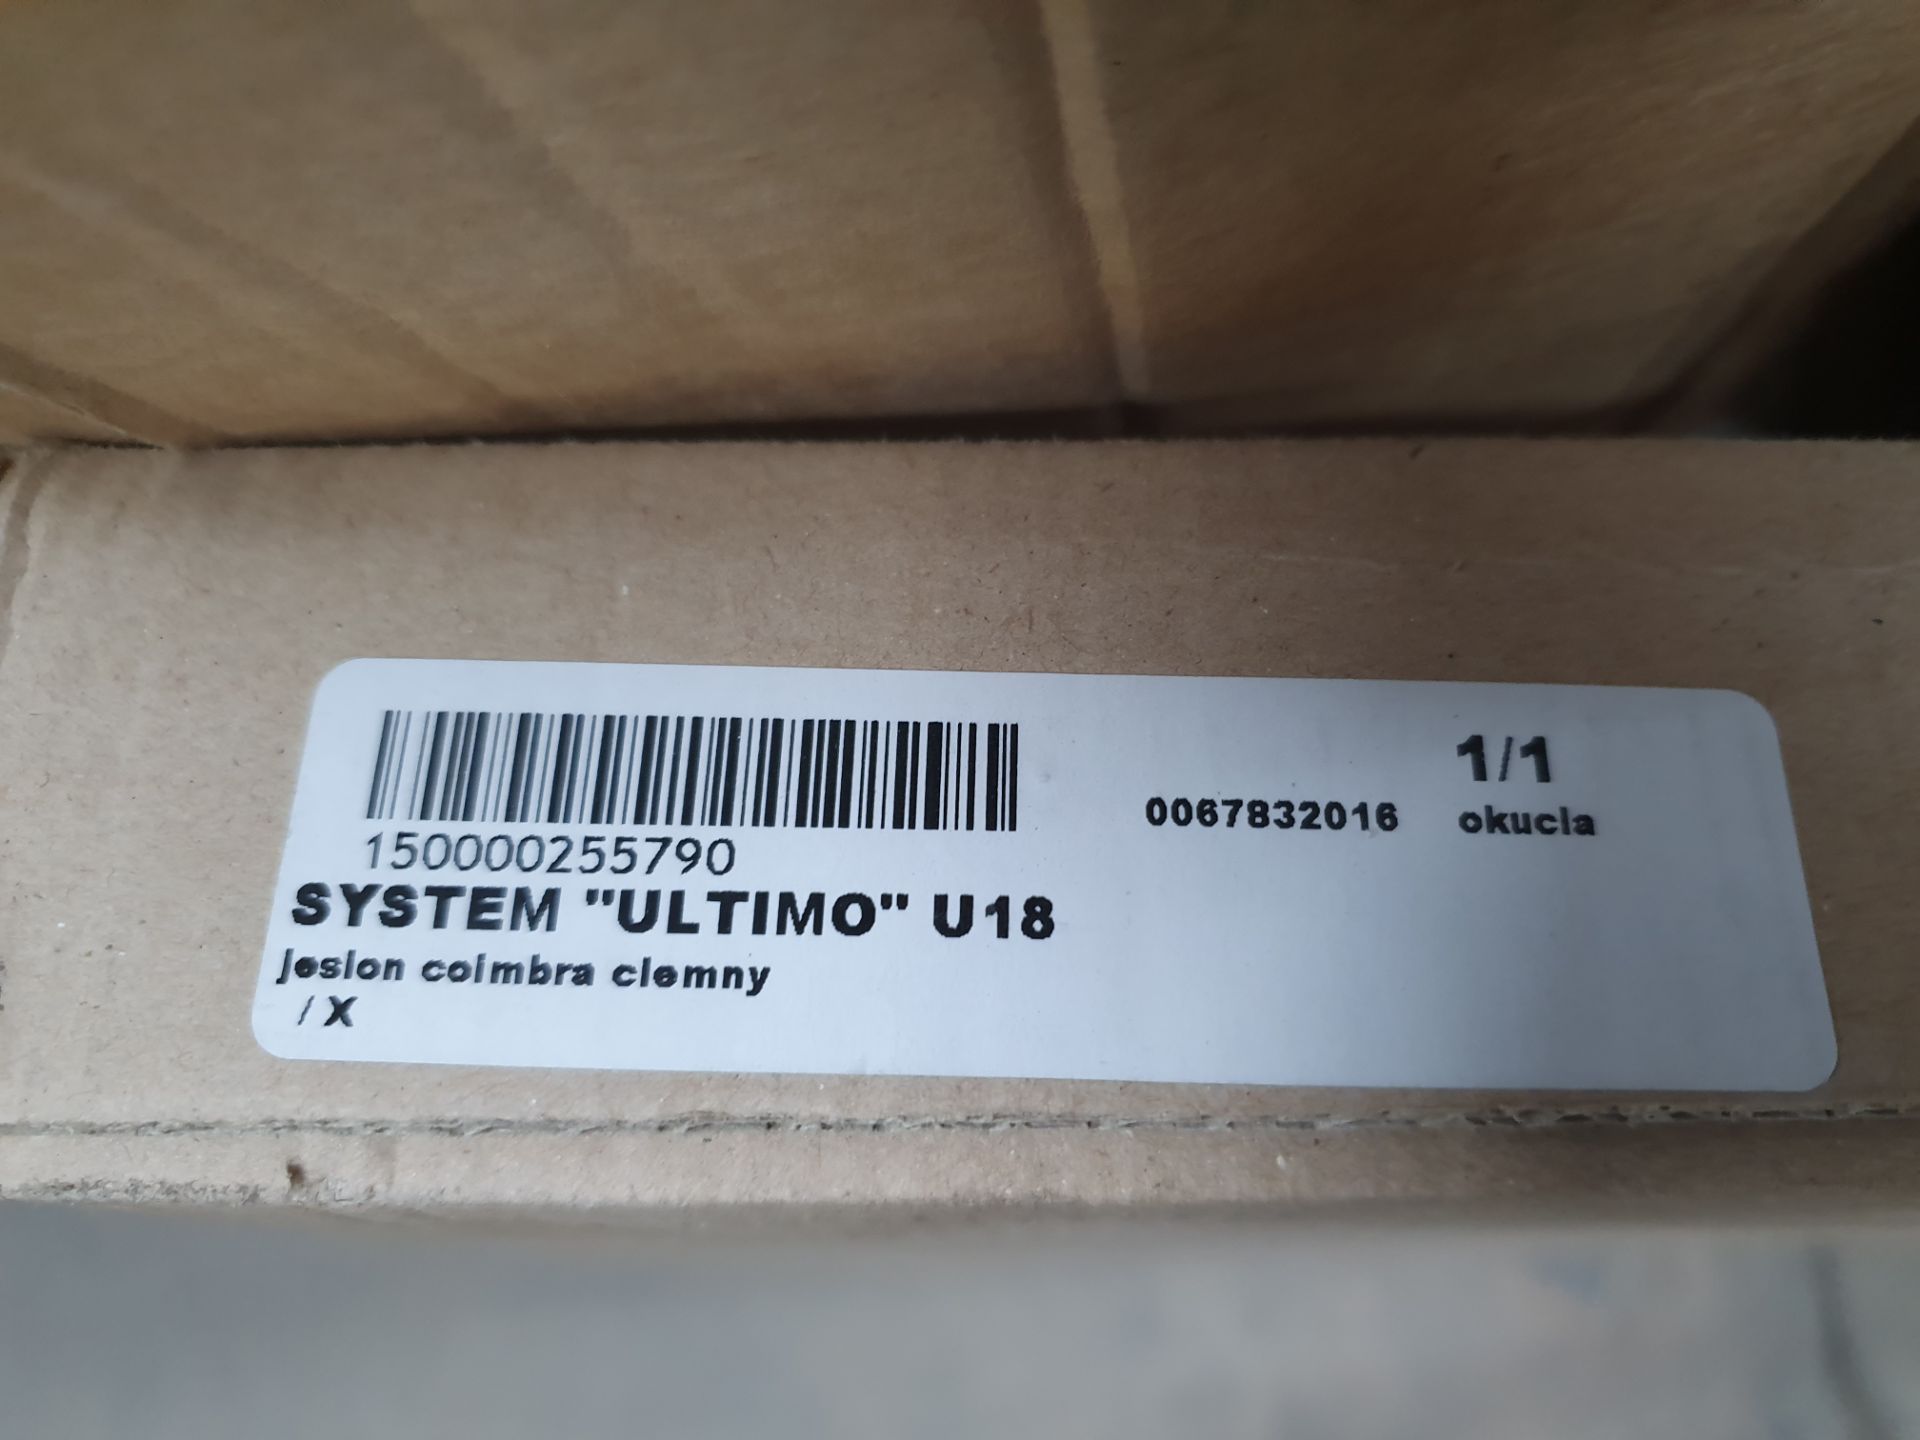 System "Ultimo" U18 desk extension